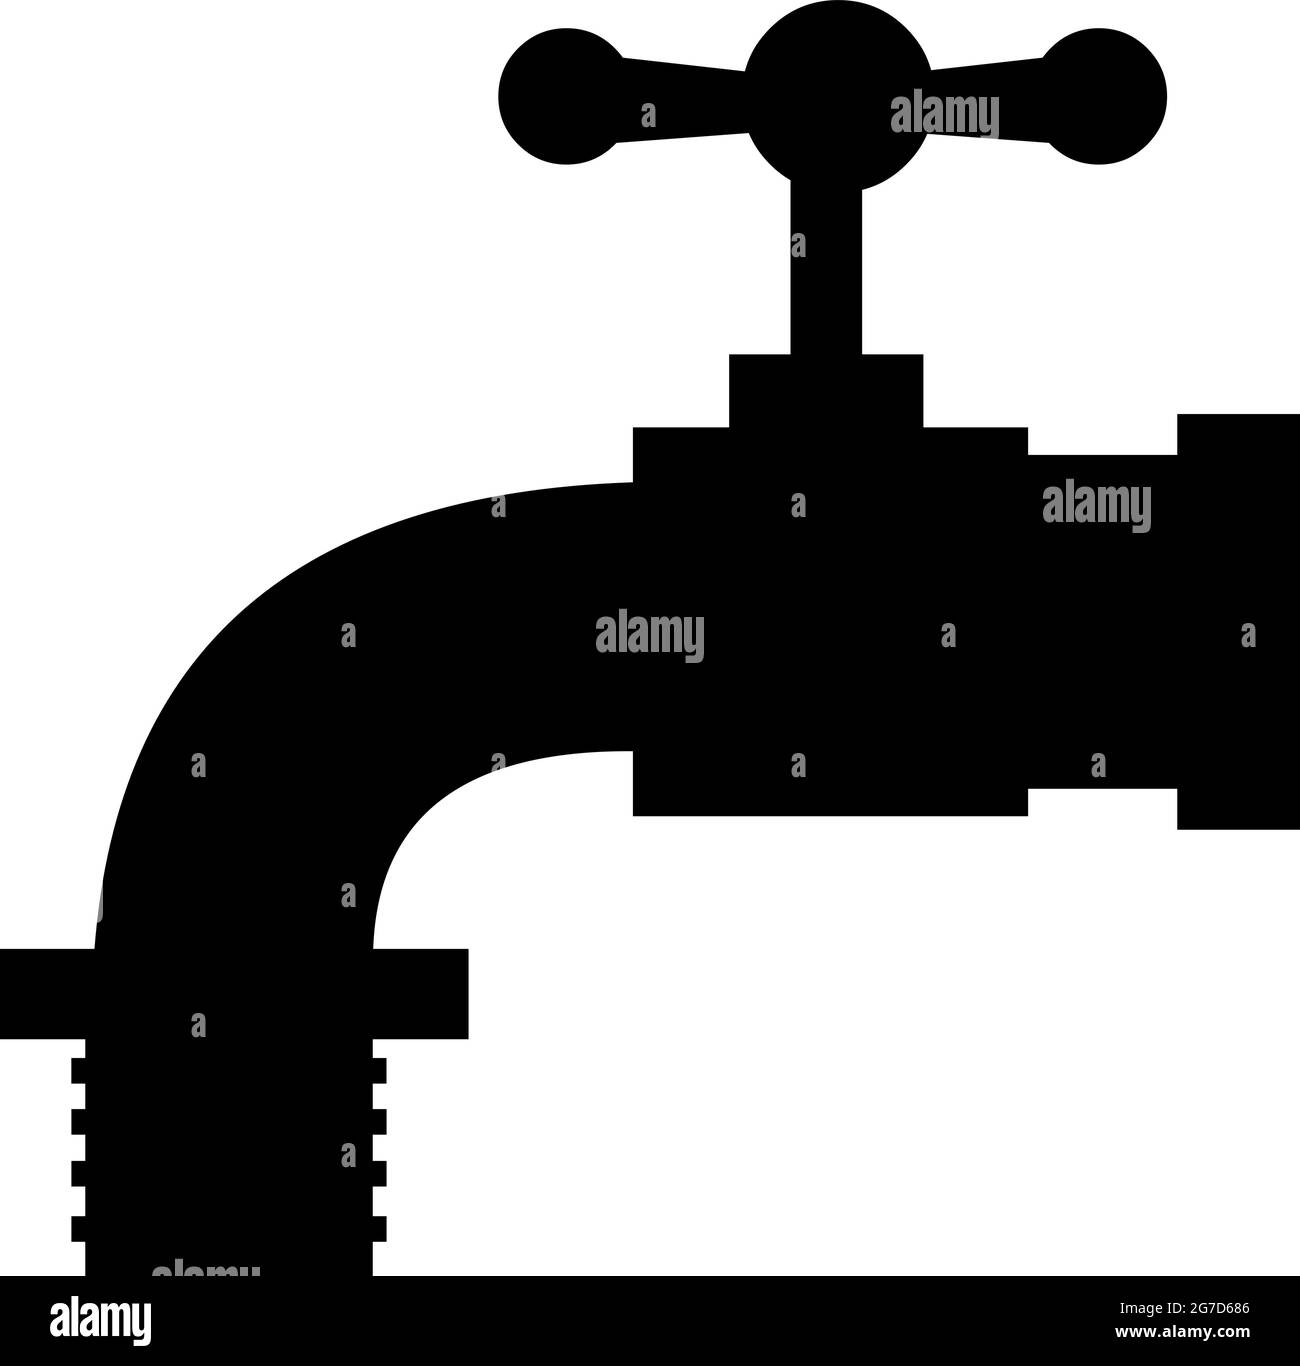 Vektor-Illustration der schwarzen Silhouette der Form eines Wasserhahns Stock Vektor